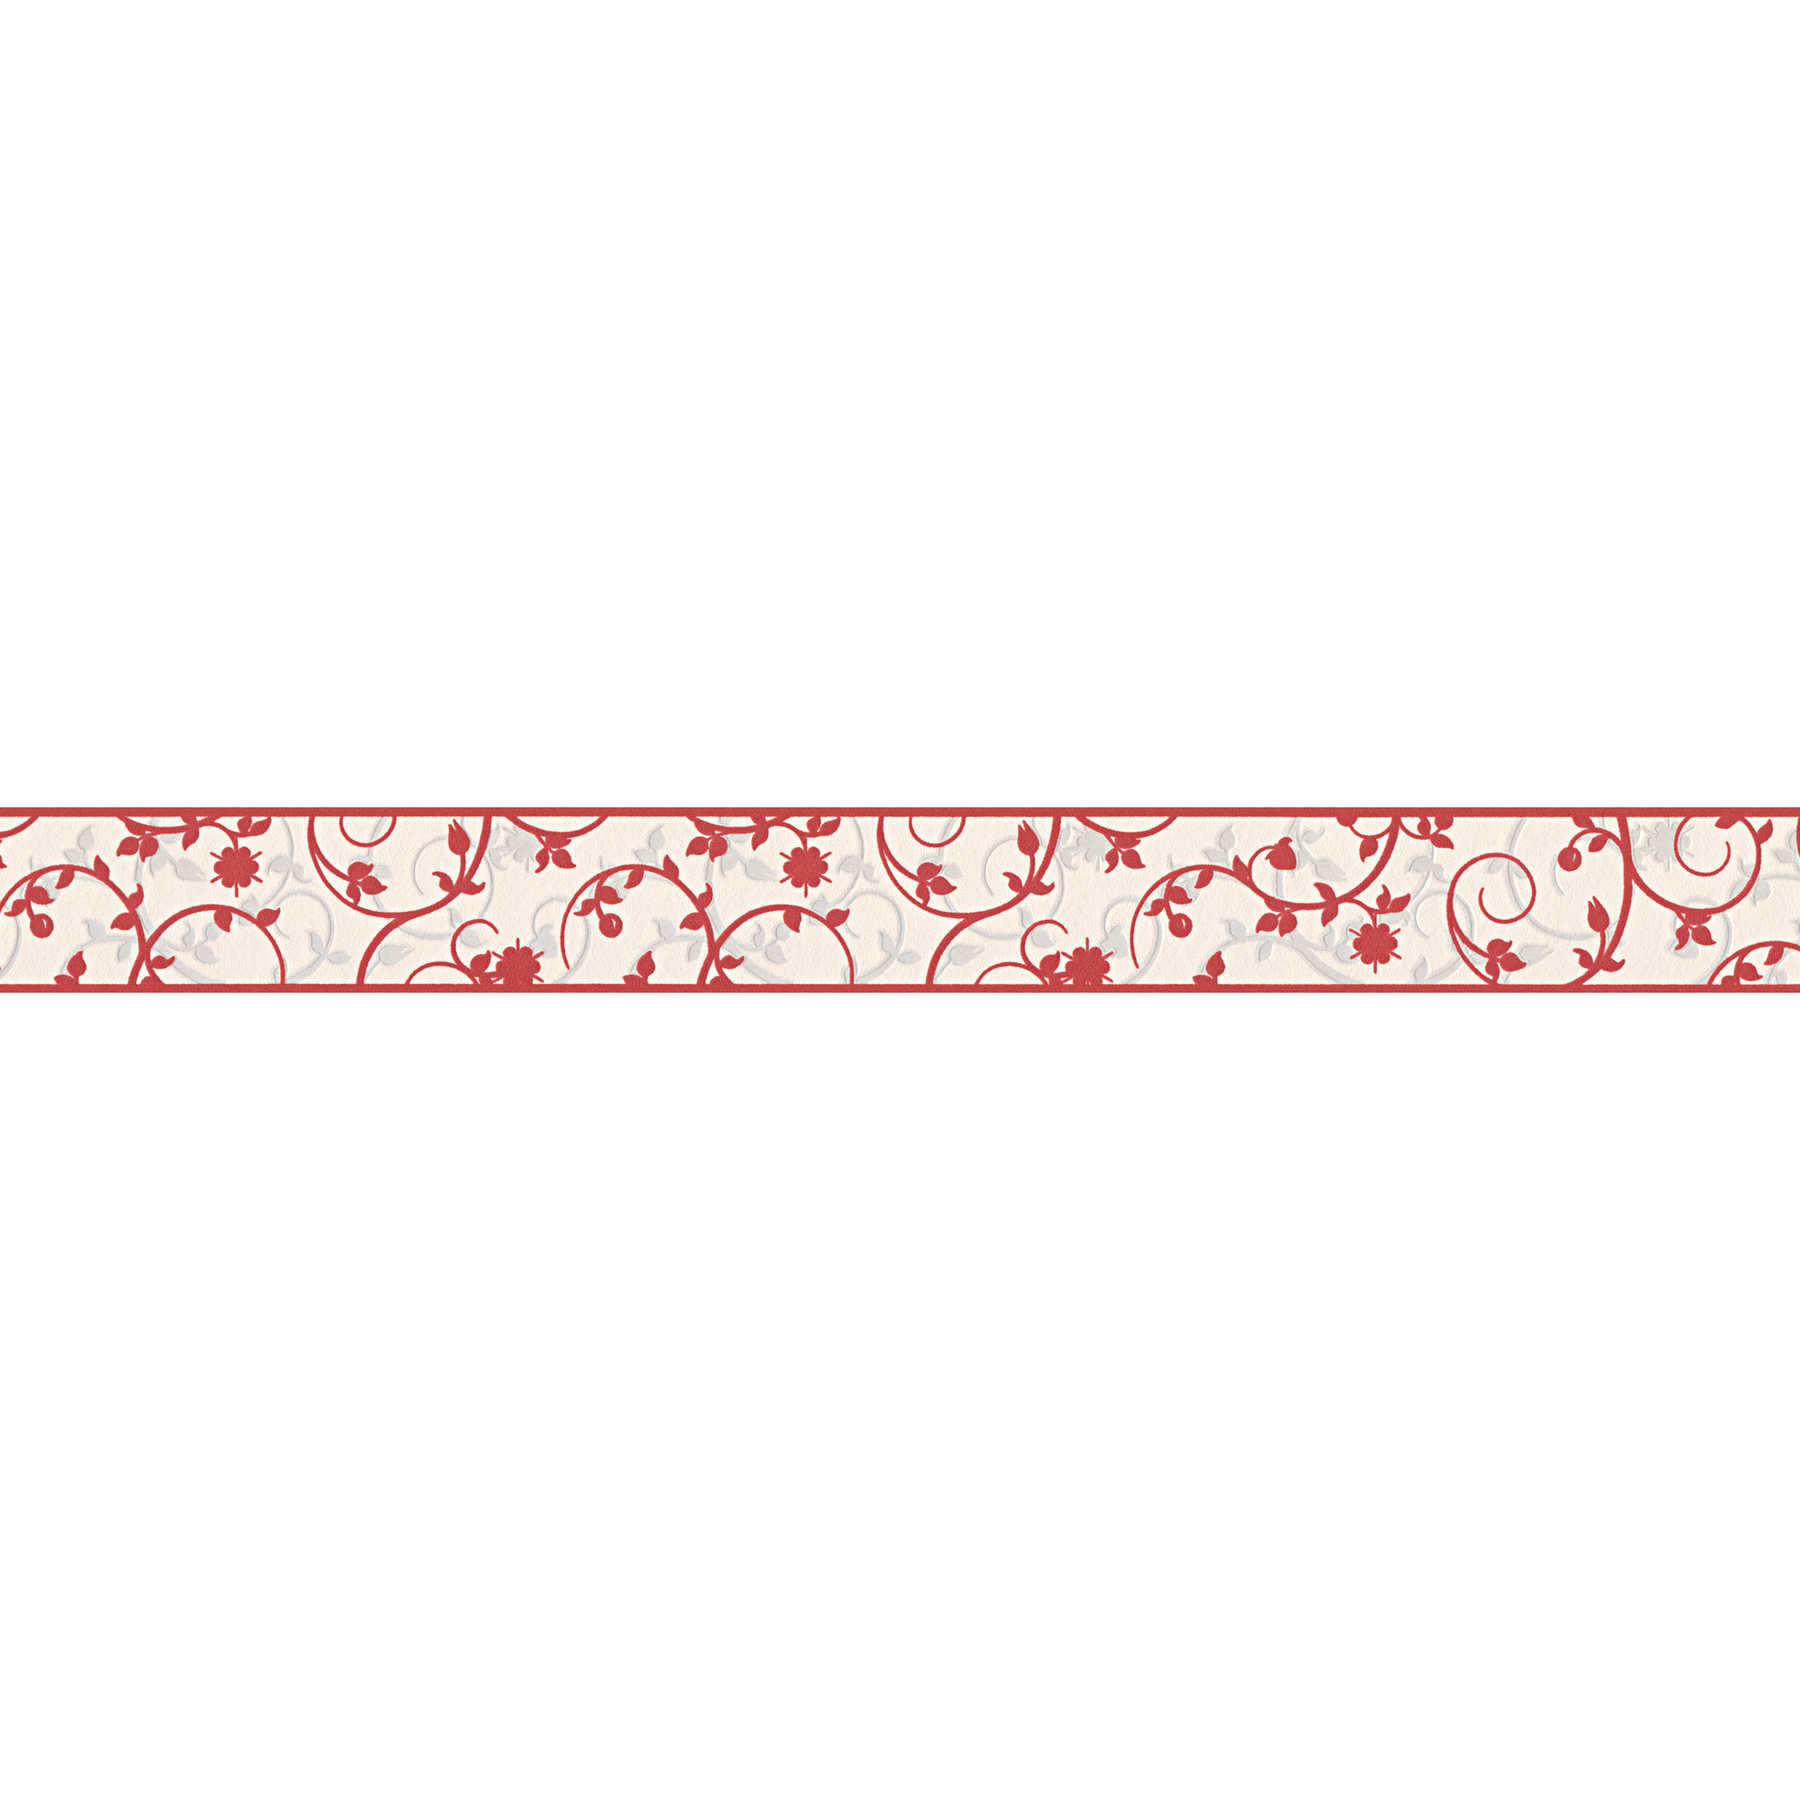         Tapetenbordüre mit Blumenranken – Rot, Weiß
    